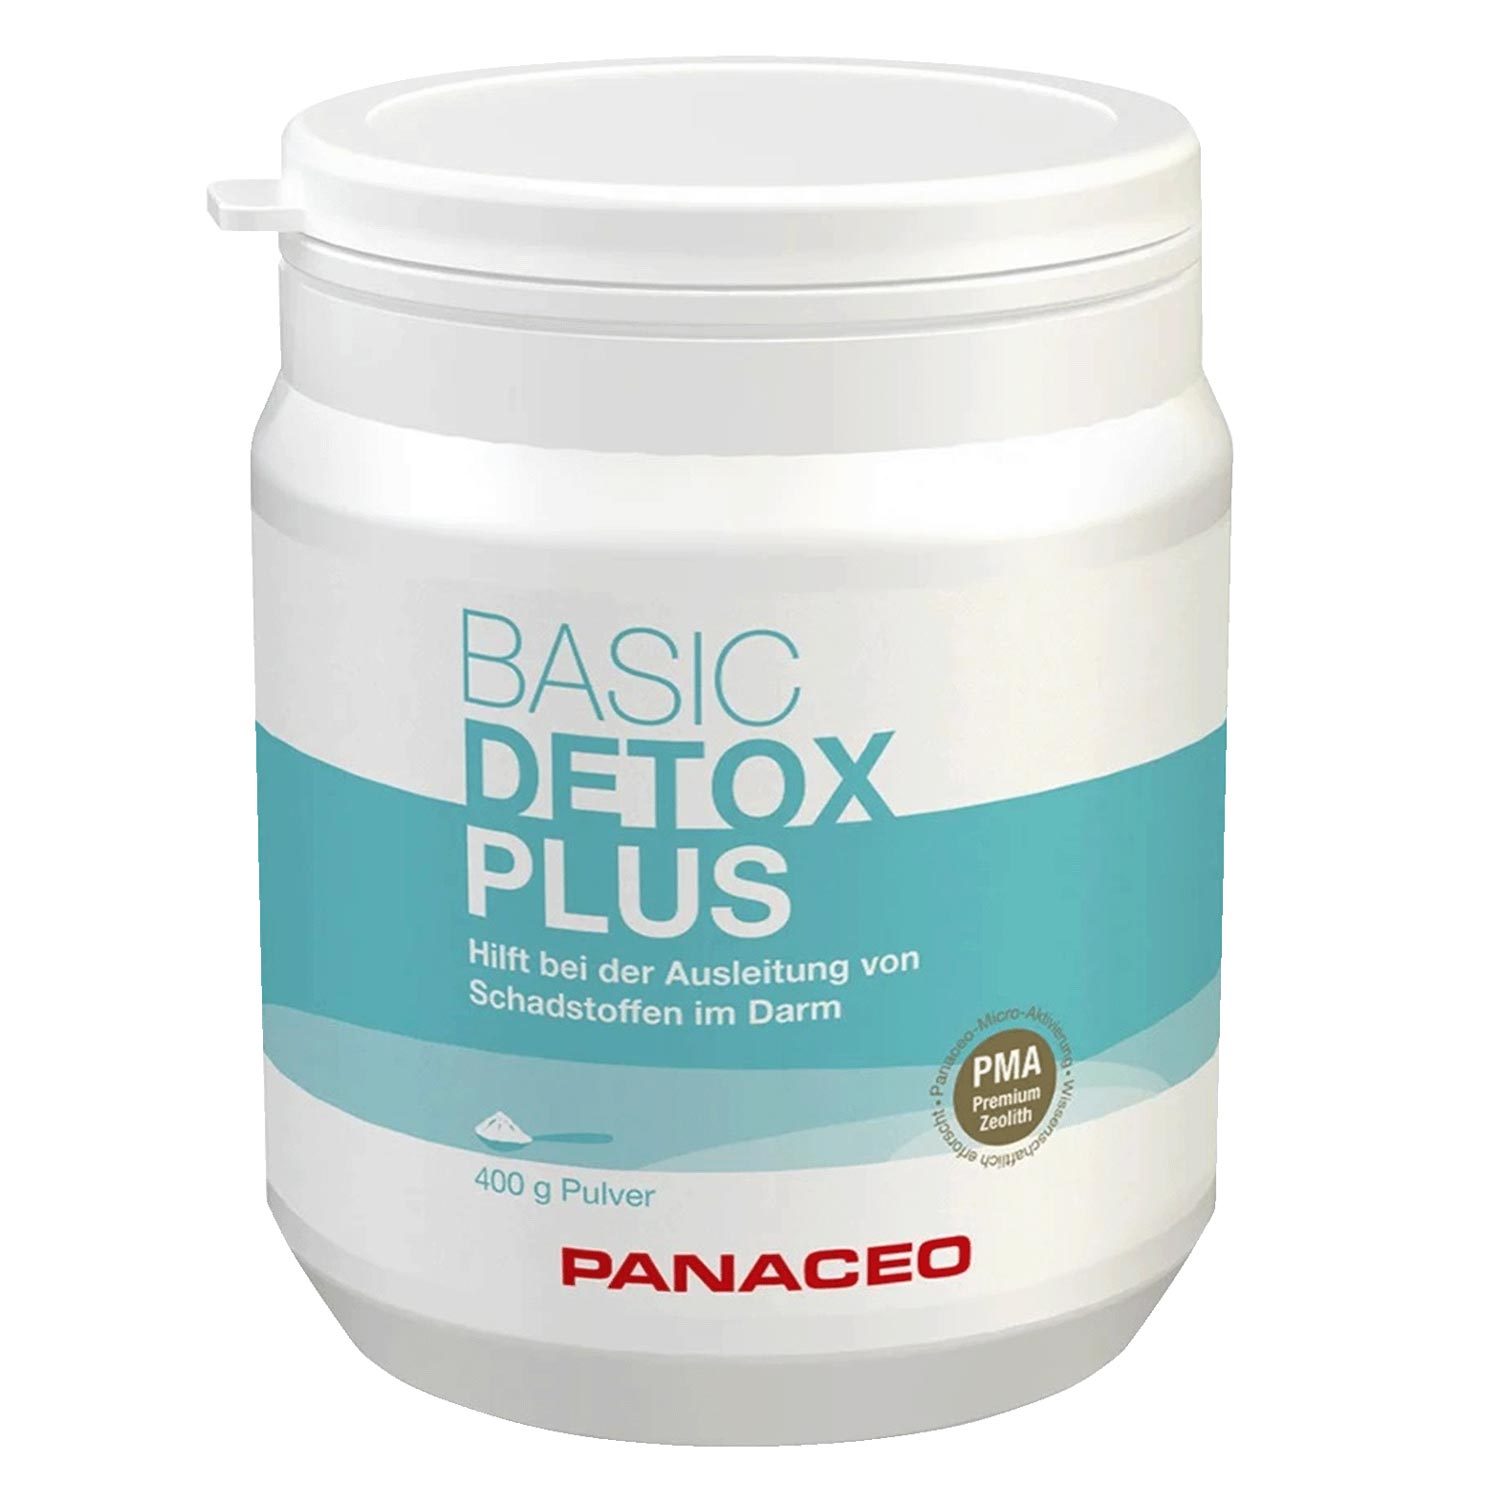 Panaceo Basic Detox Plus Pulver